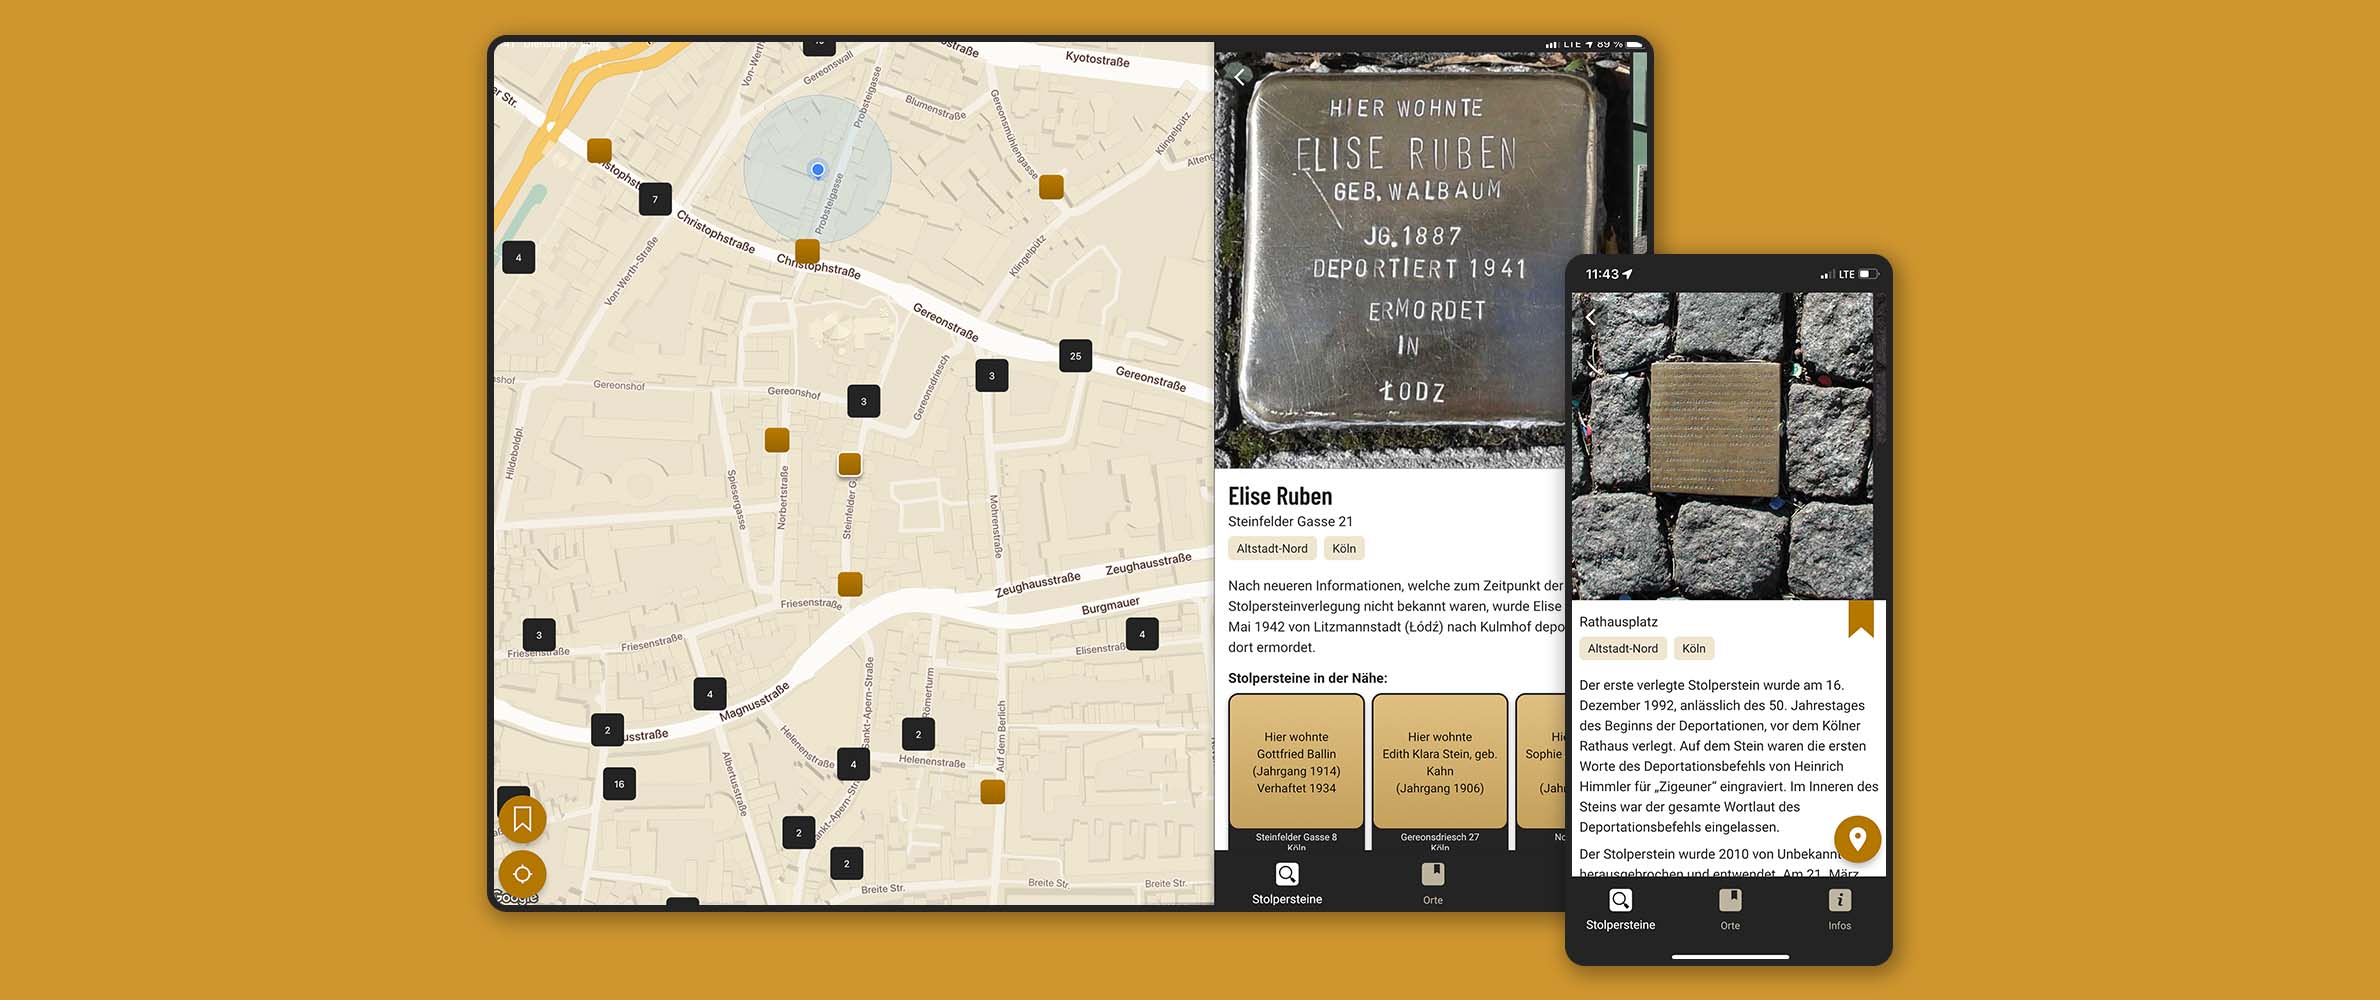 Screenshots der App in der Tablet- und Smartphone-Ansicht. Sie zeigen jeweils ein Foto eines Stolpersteins mit textlicher Erklärung. Das Tablet zeigt zudem eine Umgebungskarte, auf der die Stolpersteine markiert sind.